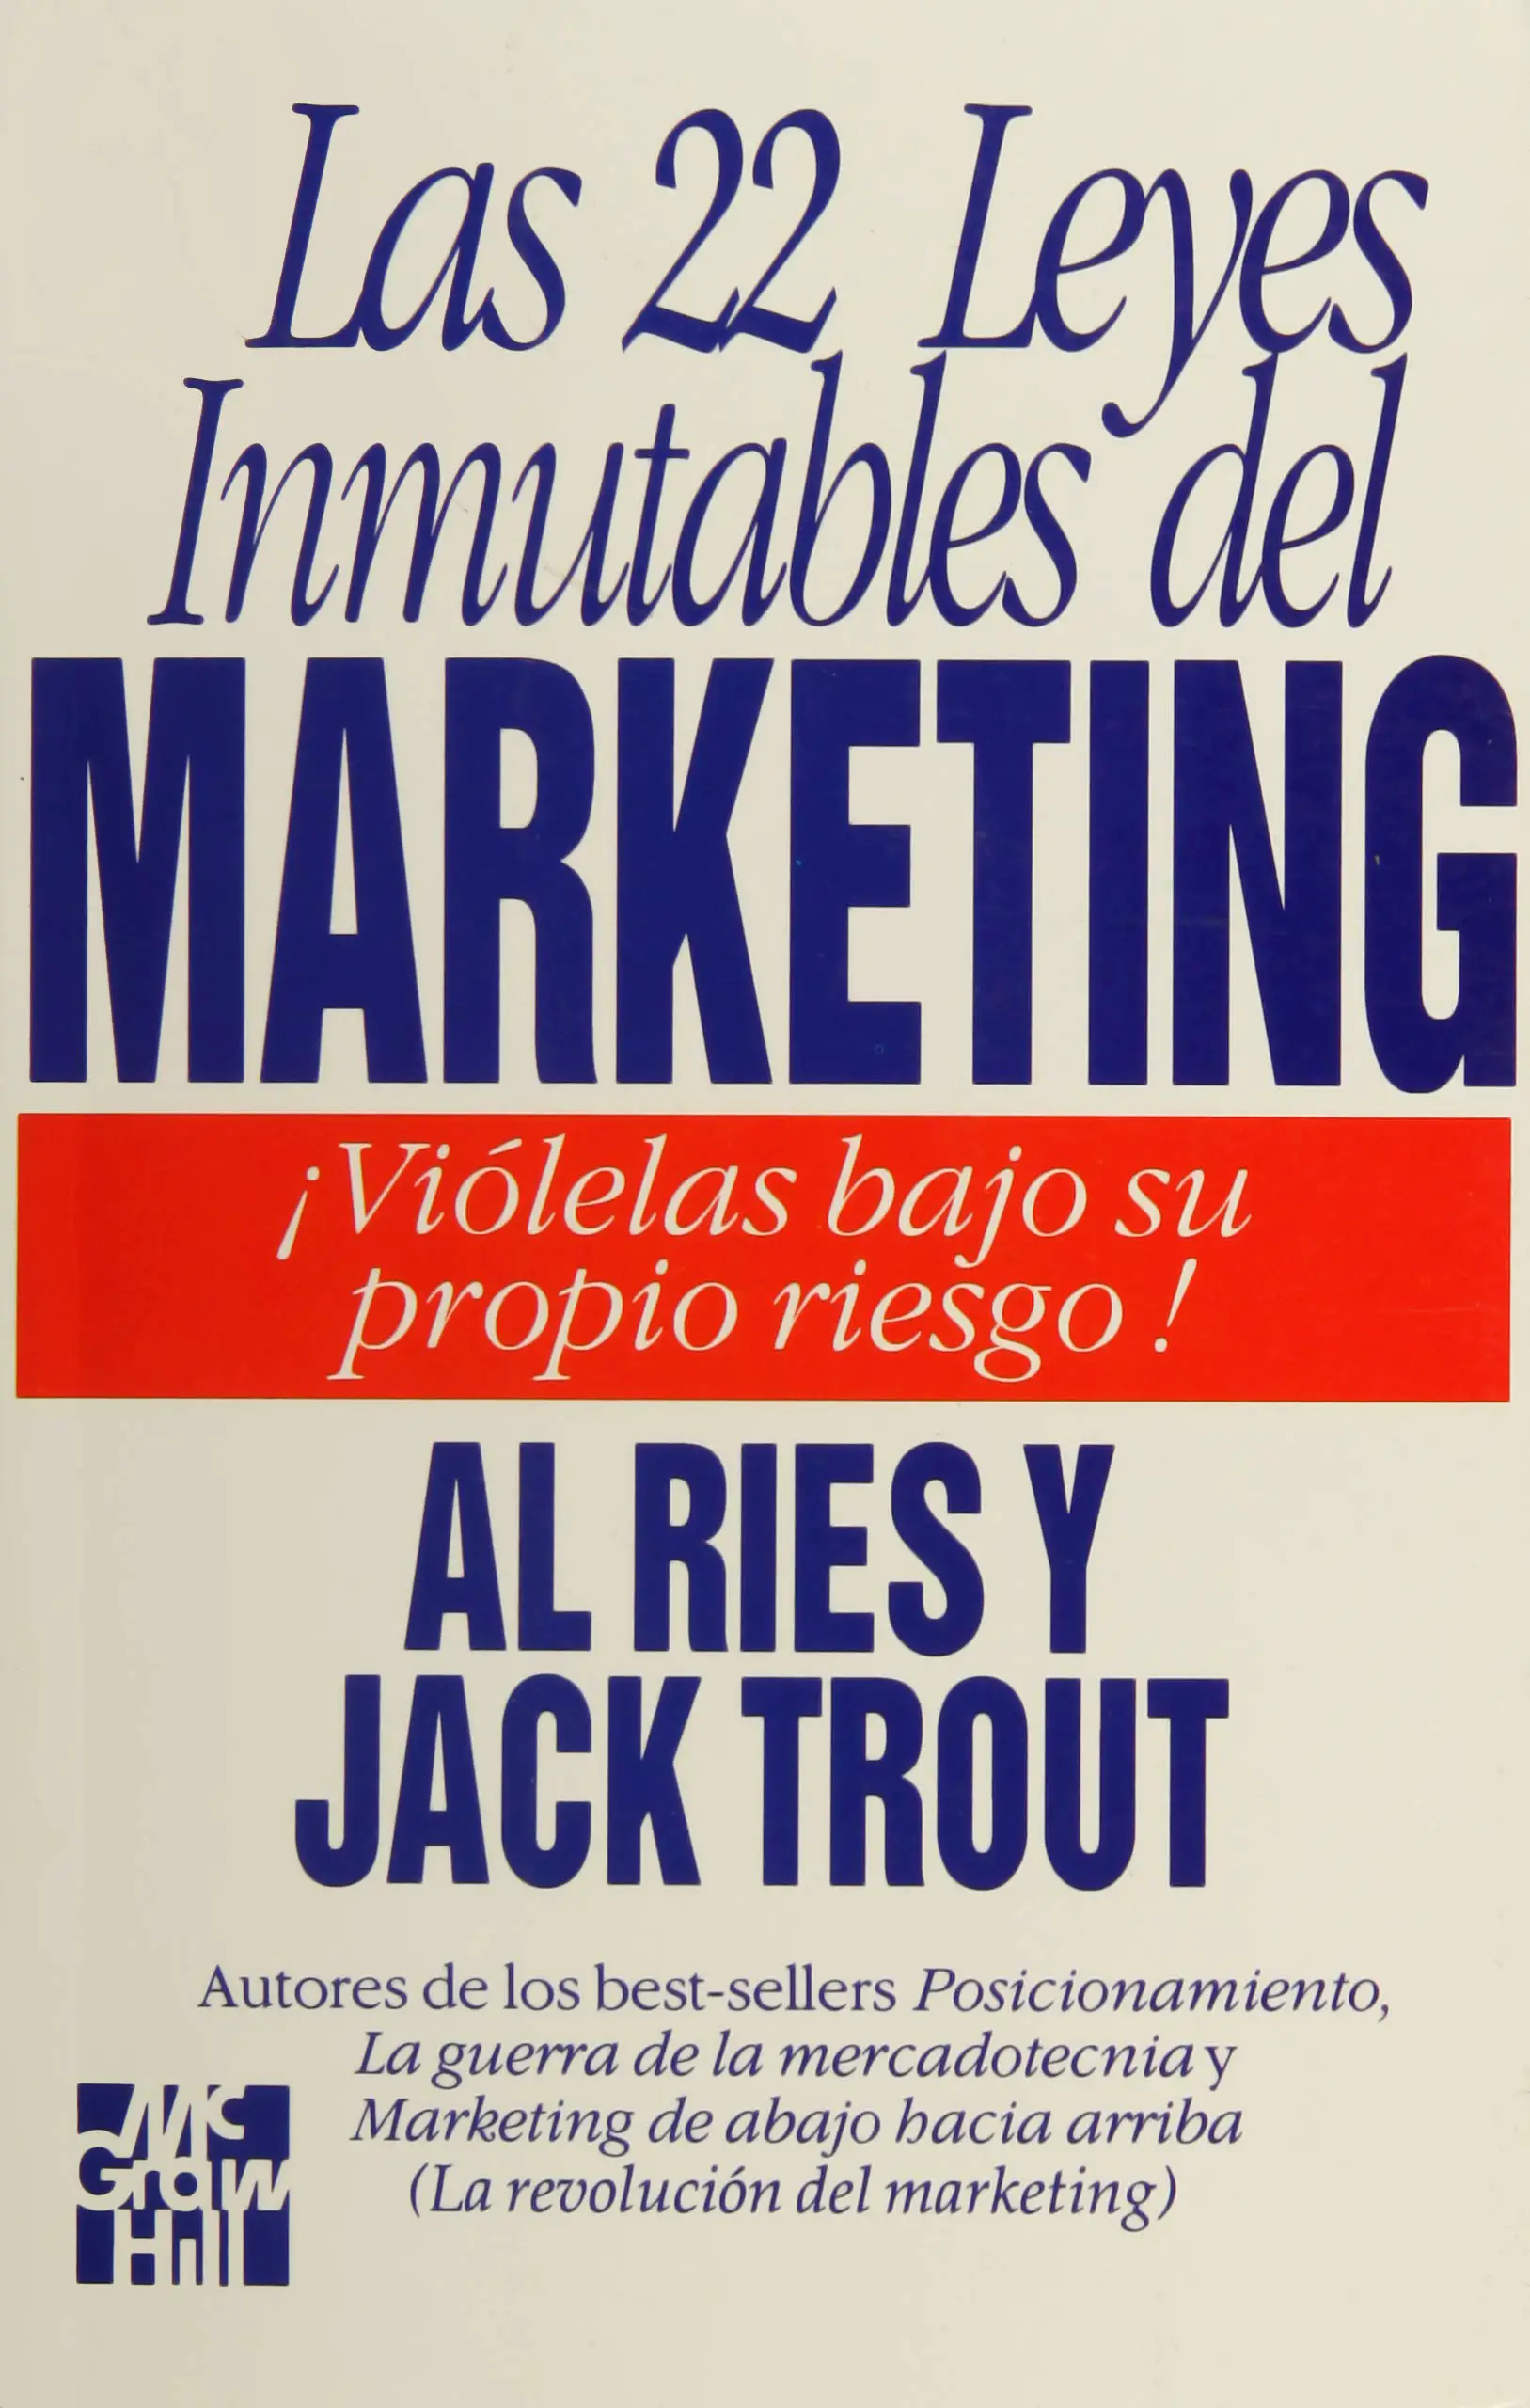 Las 22 leyes inmutables del marketing - Las 22 leyes inmutables del marketing portada castellano2 - Resumen y reseña del libro las 22 leyes inmutables del marketing